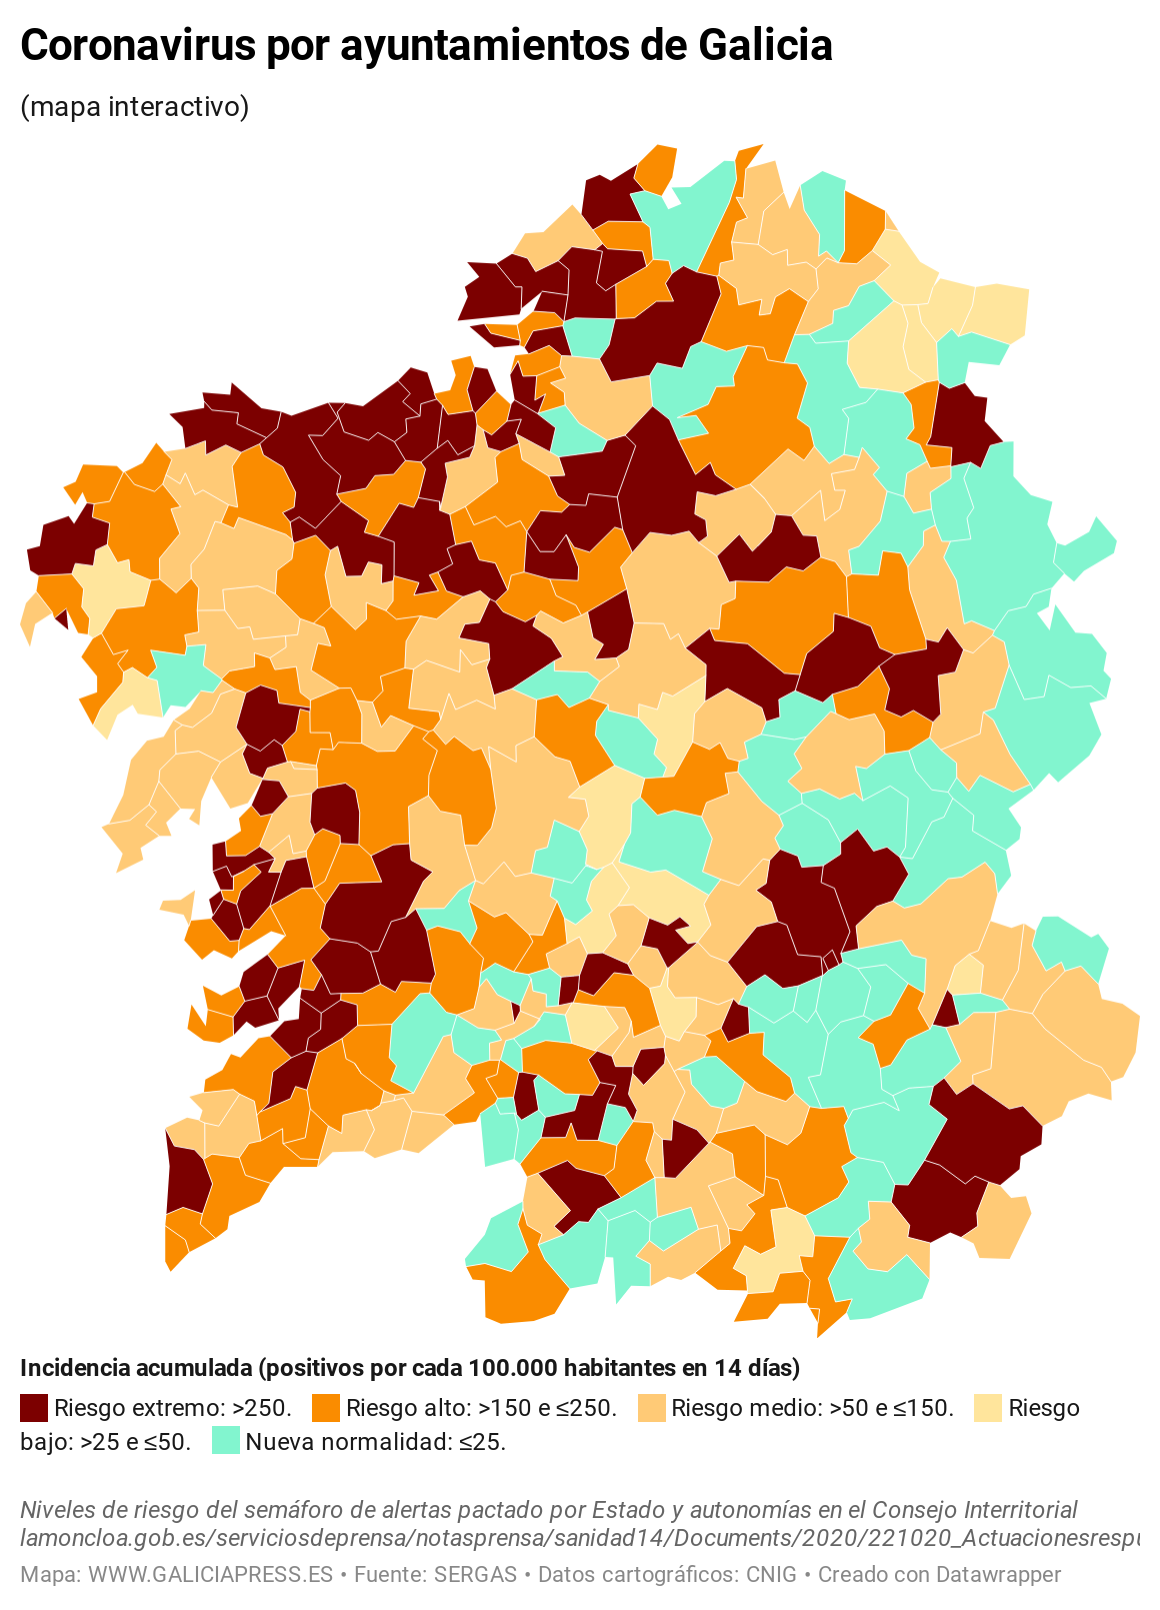 KV7EO coronavirus por ayuntamientos de galicia  (15)